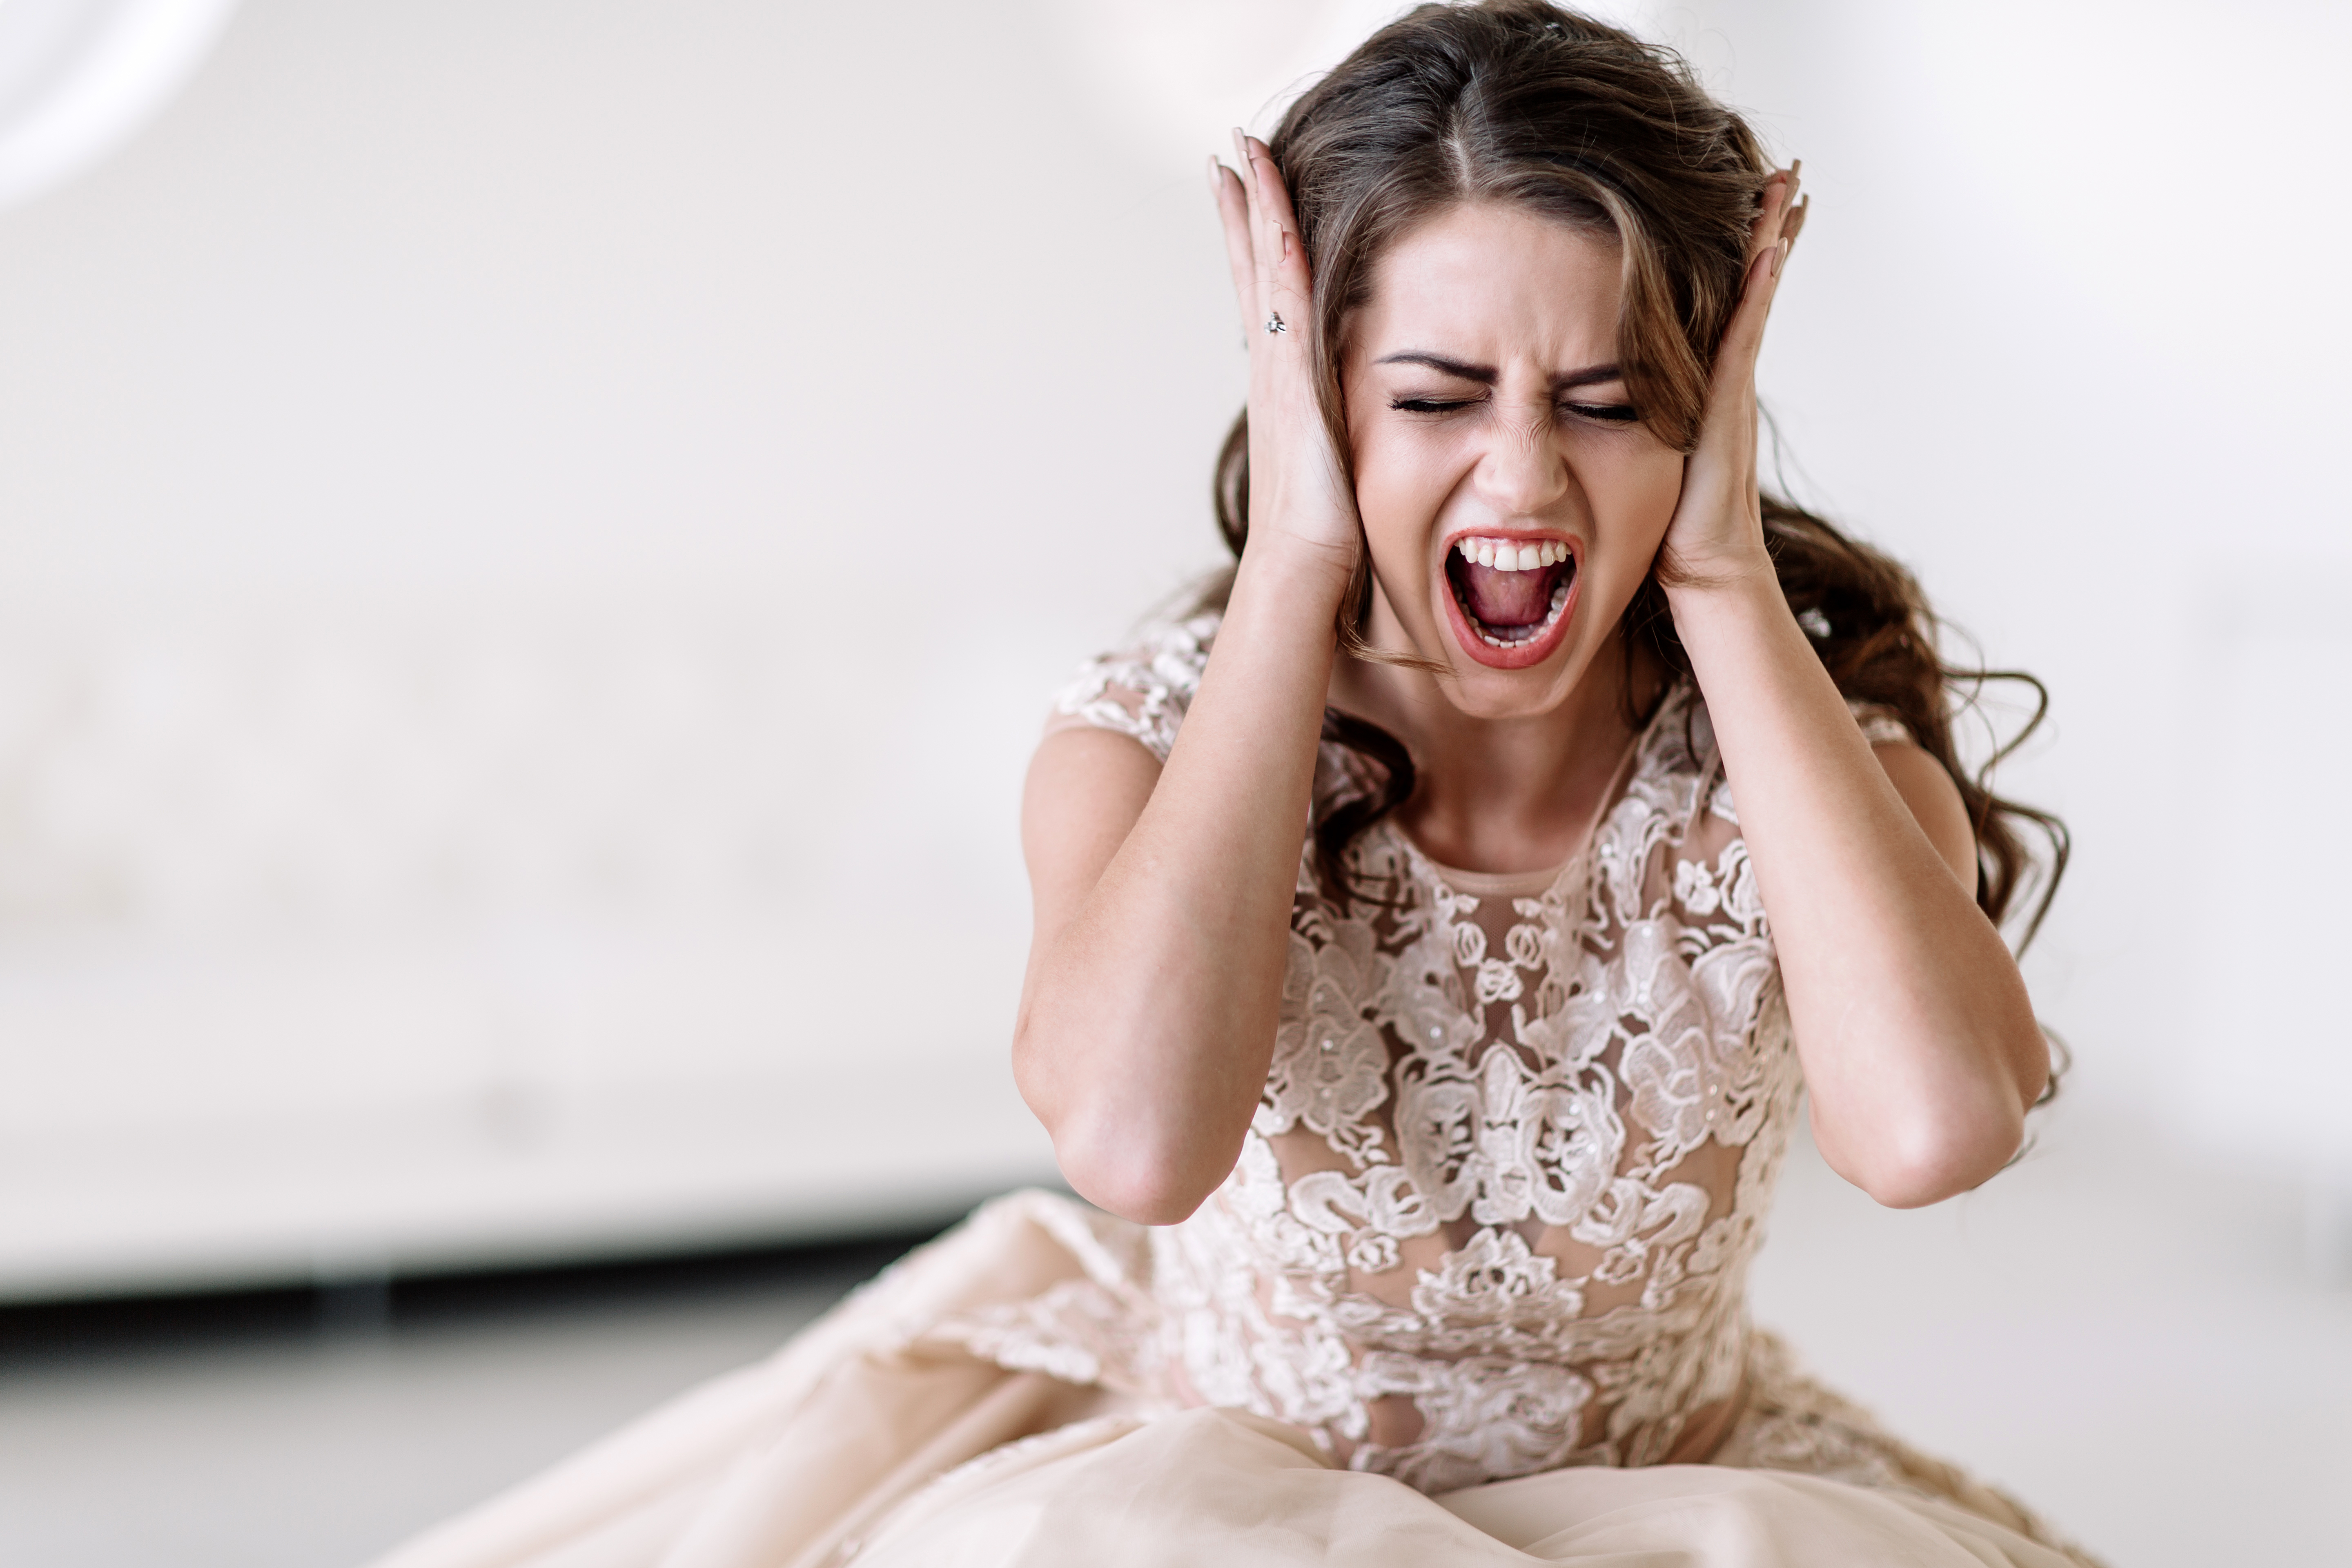 Une mariée en colère | Source : Shutterstock